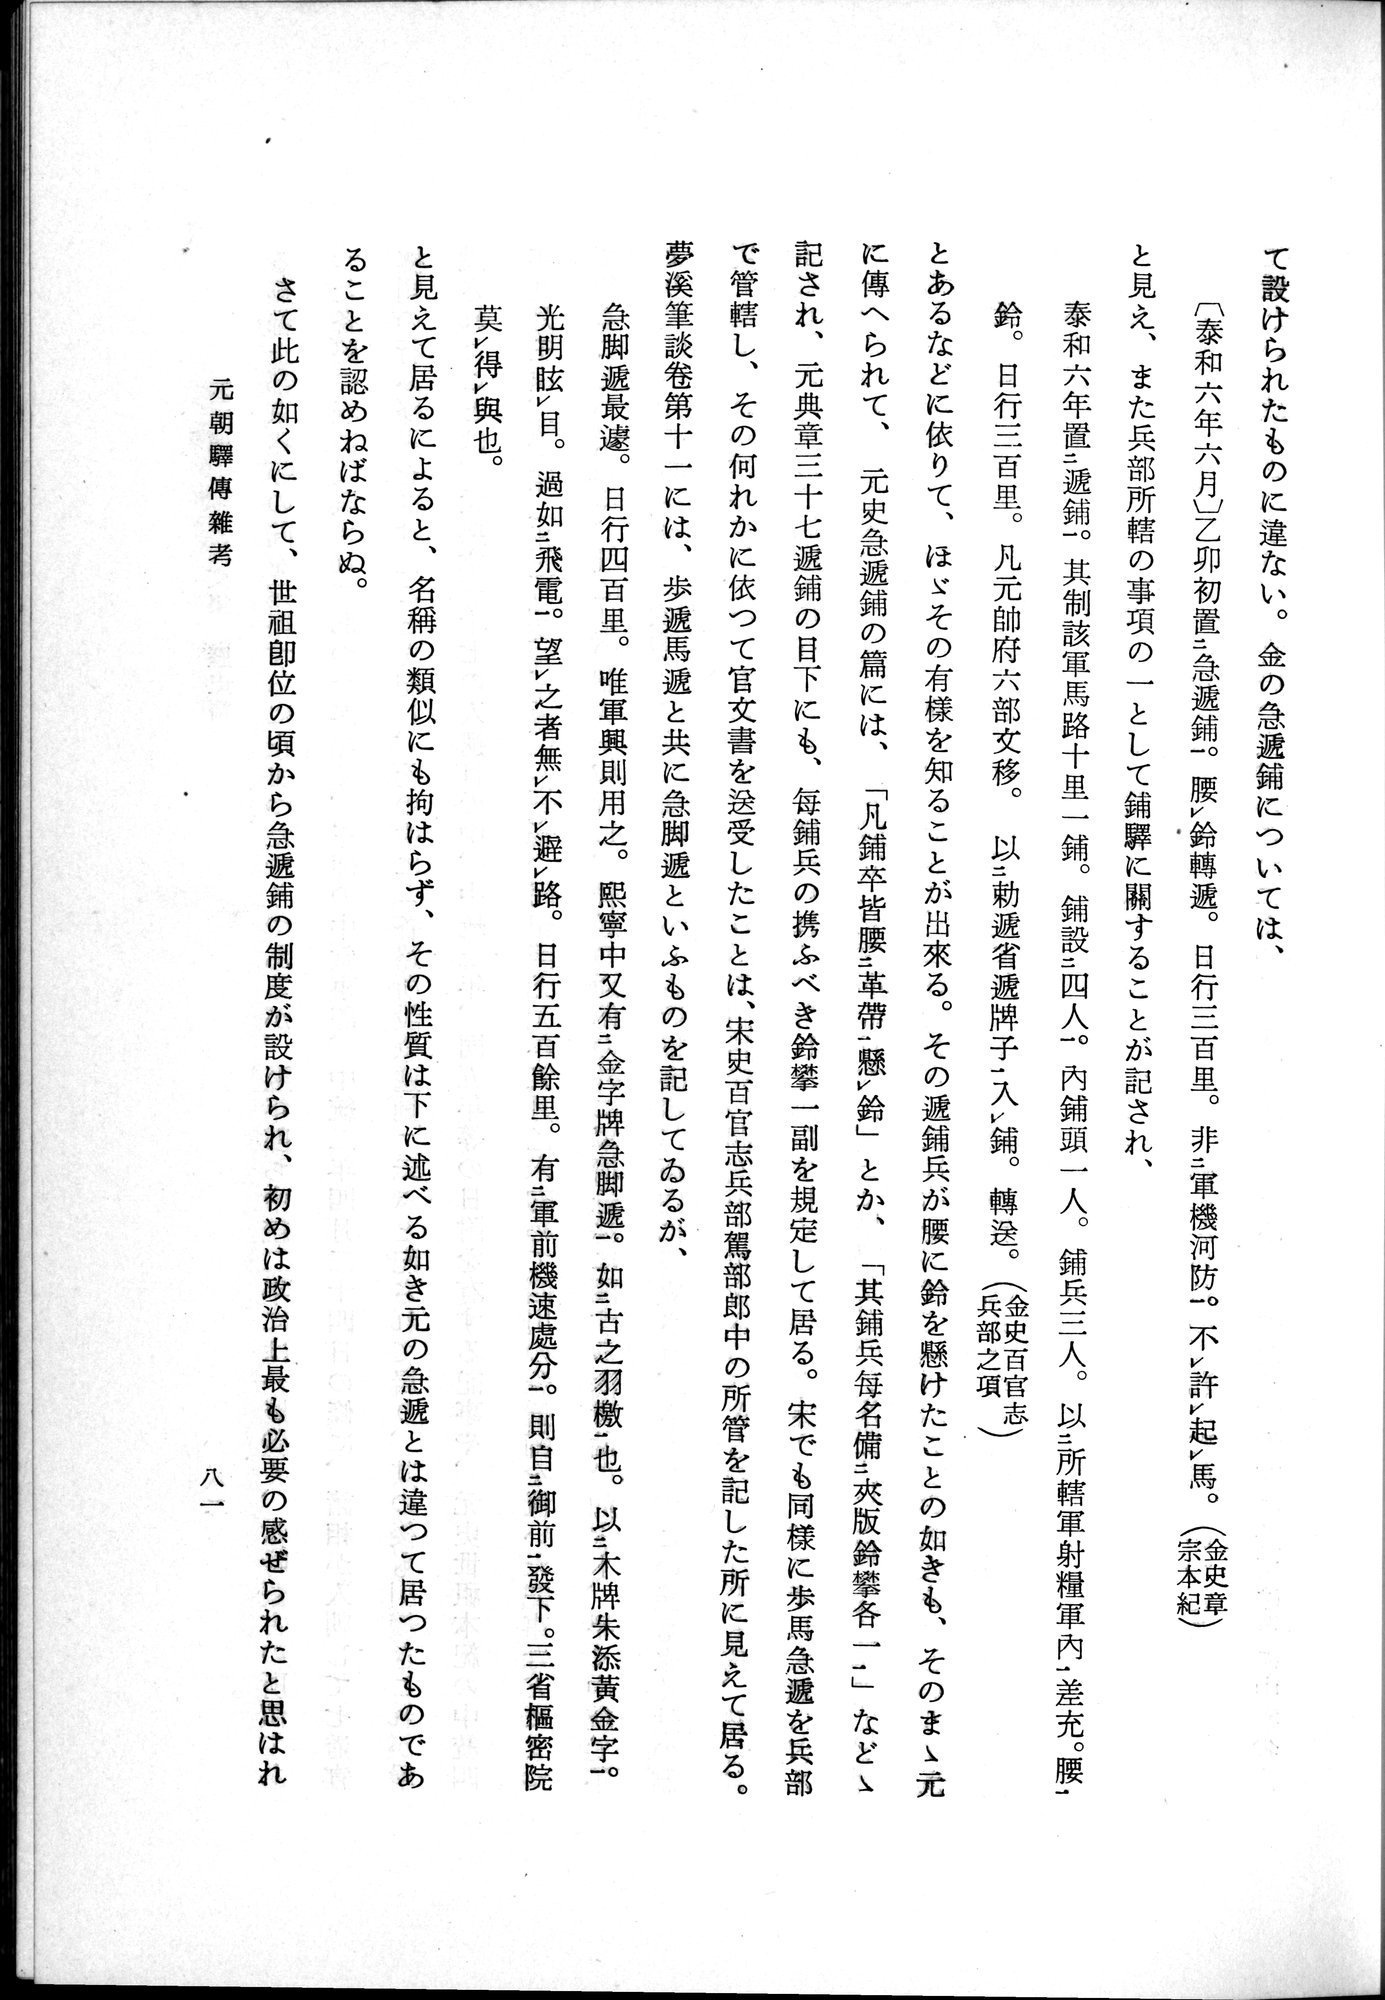 羽田博士史学論文集 : vol.1 / Page 119 (Grayscale High Resolution Image)